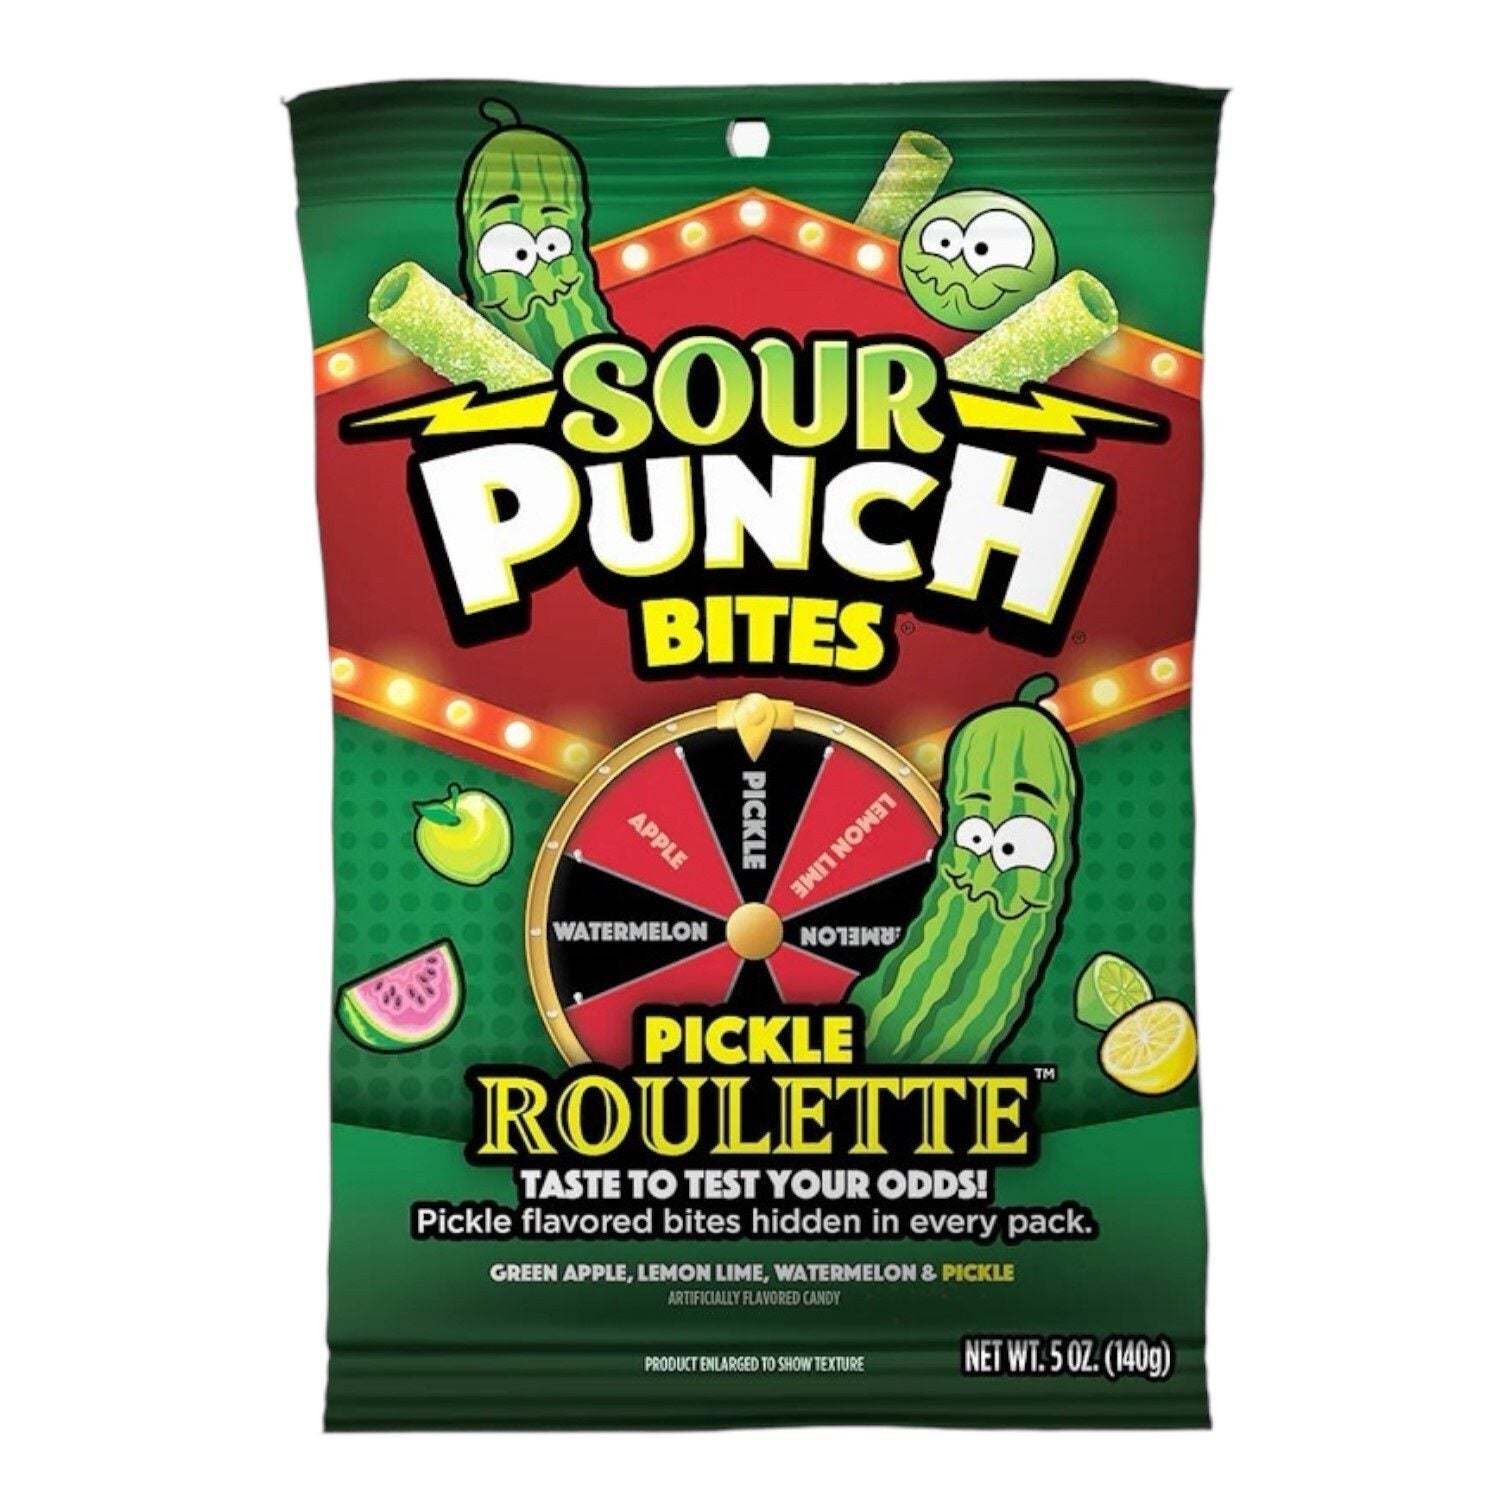 Sour punch Bites Roulette